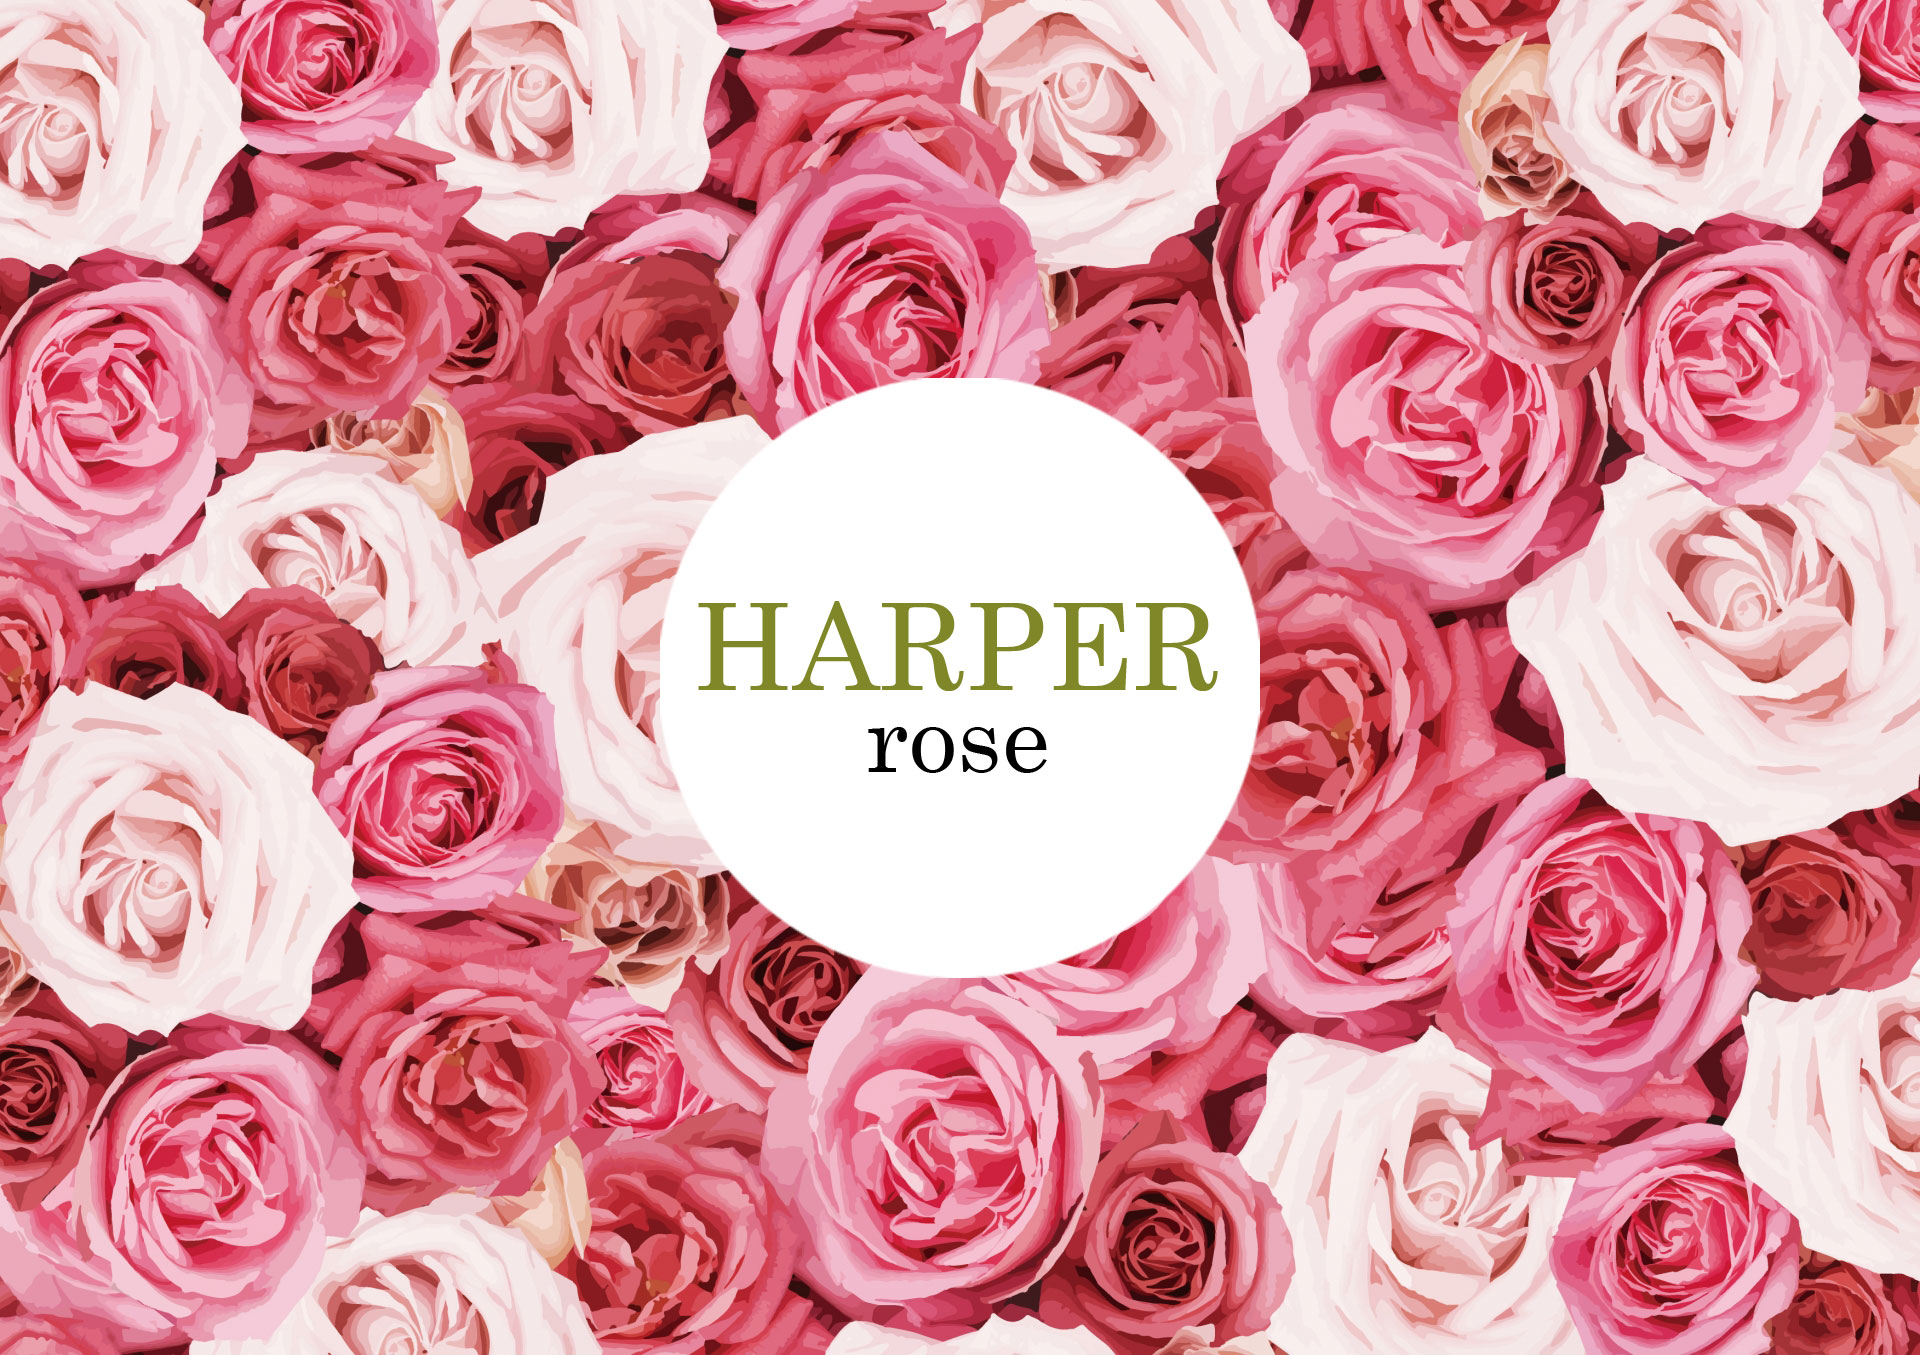 HARPER rose (ハーパーローズ)